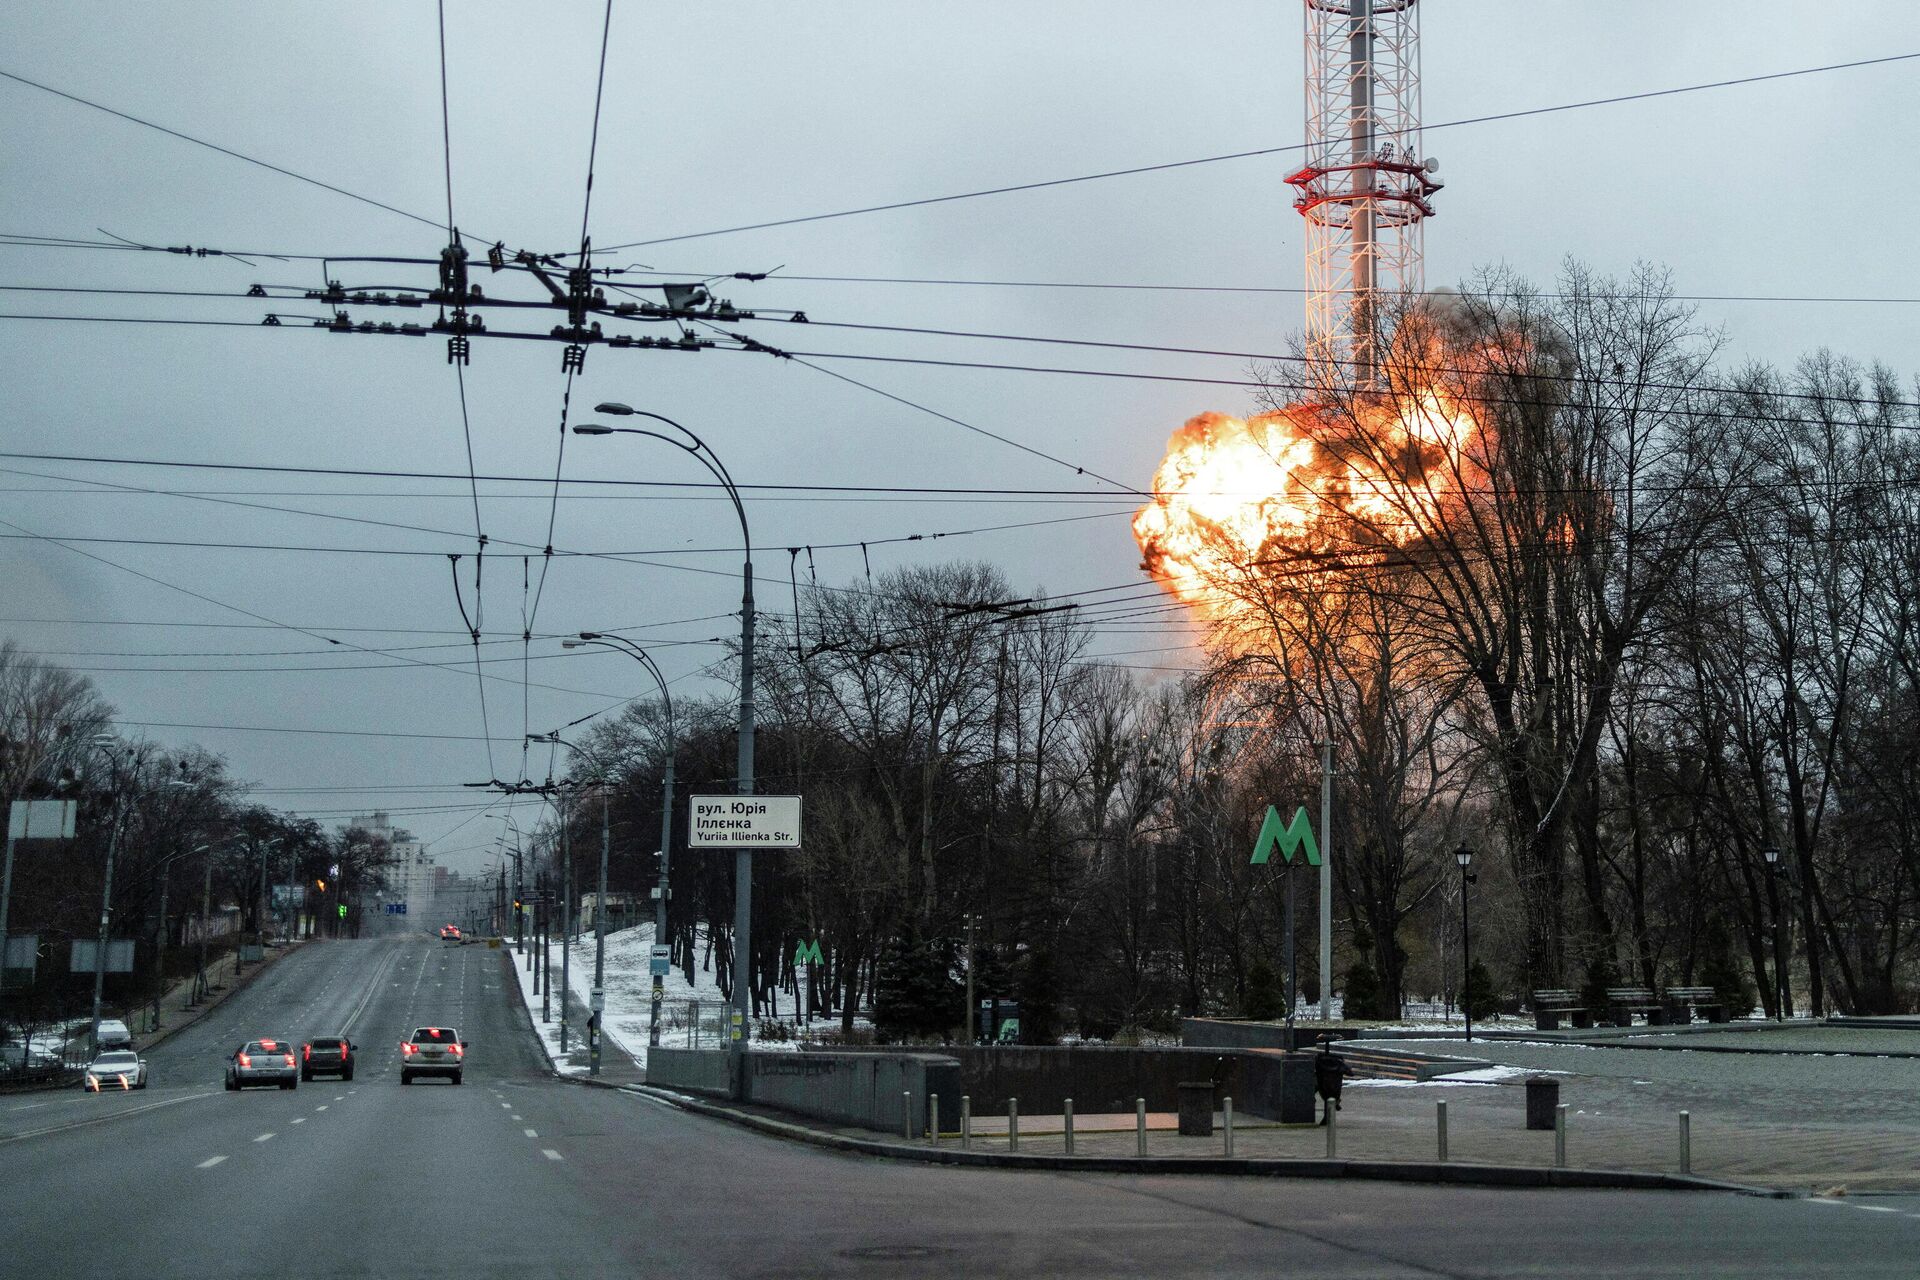 A blast is seen in the TV tower in Kiev amid Russia's special operation in Ukraine - Sputnik International, 1920, 03.03.2022